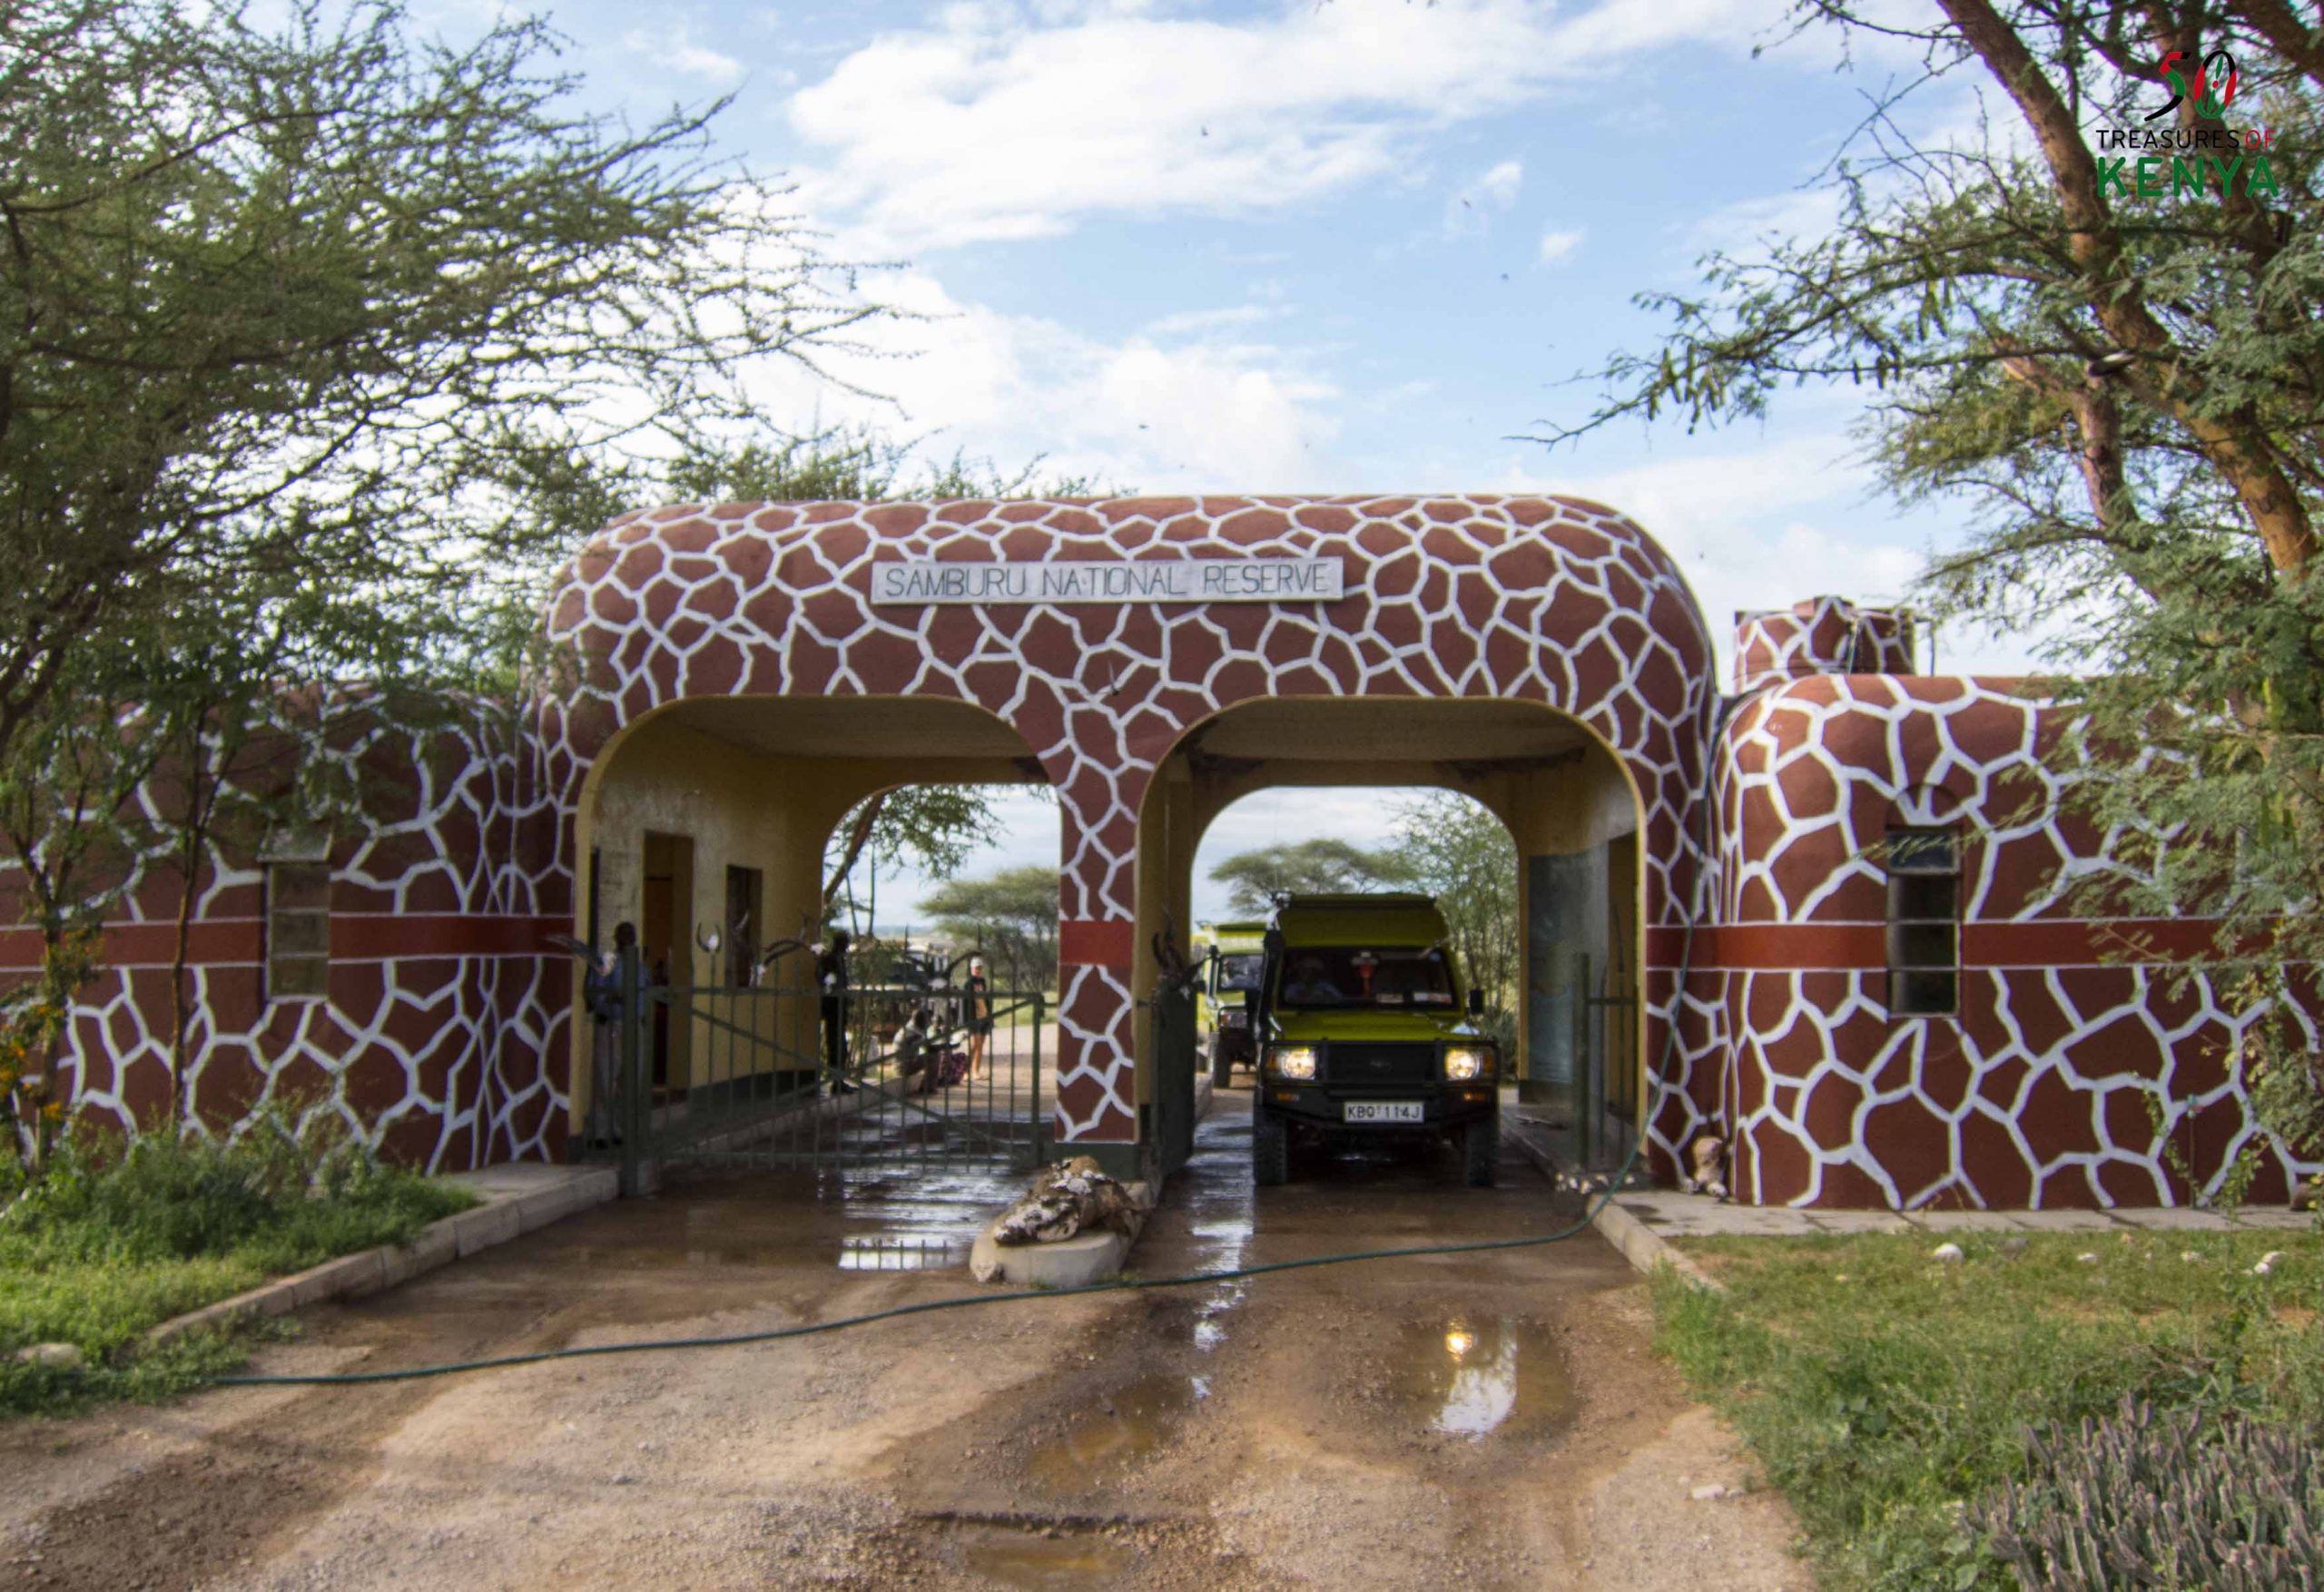 Entry Gates to Samburu National Reserve